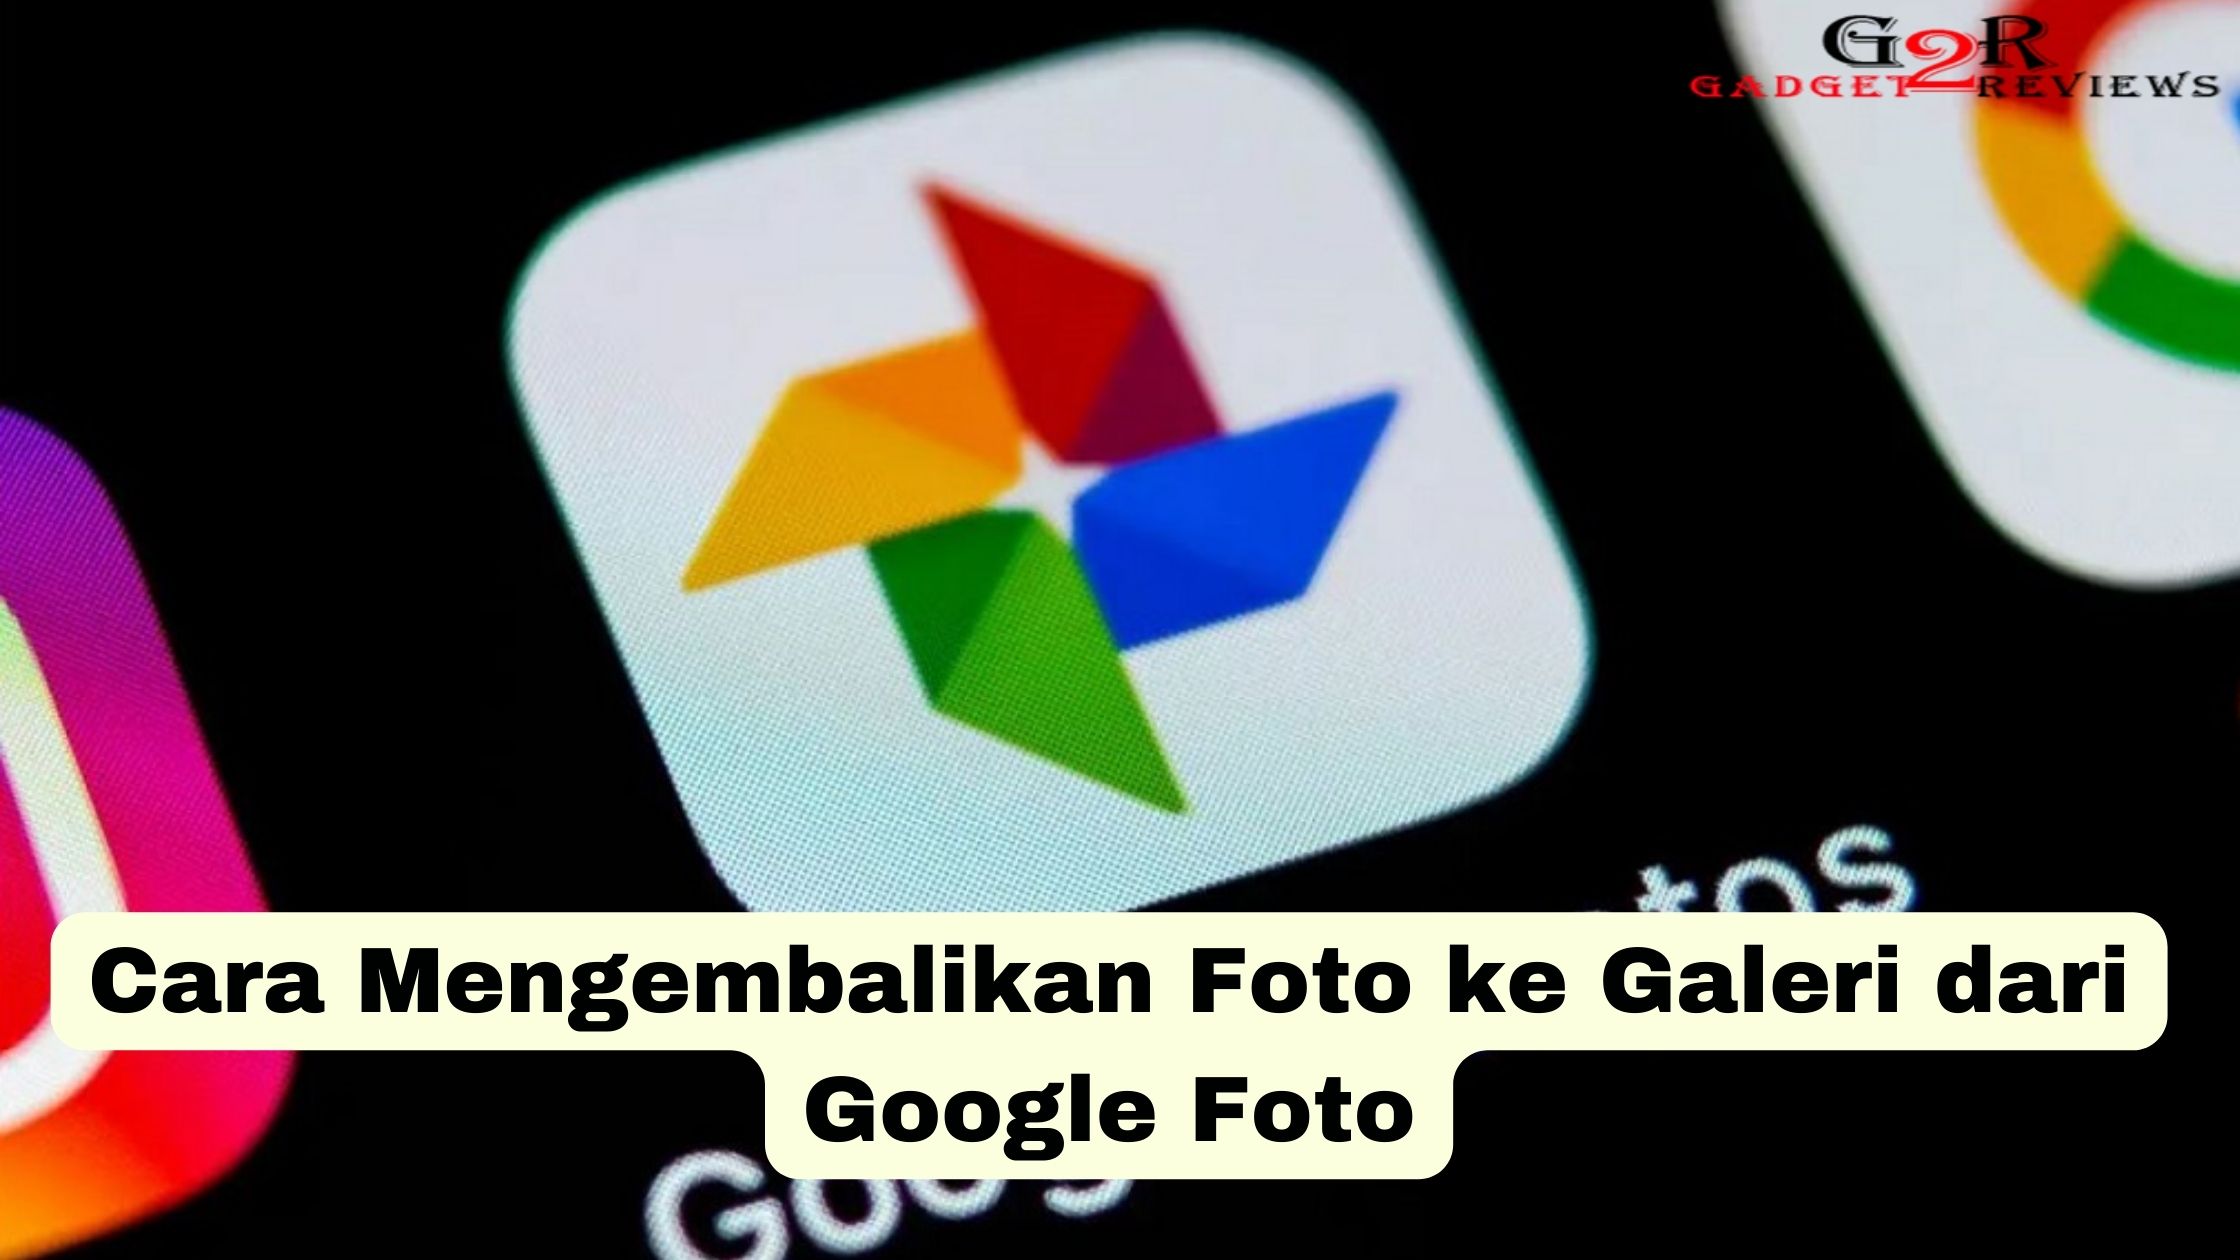 Cara Mengembalikan Foto ke Galeri dari Google Foto